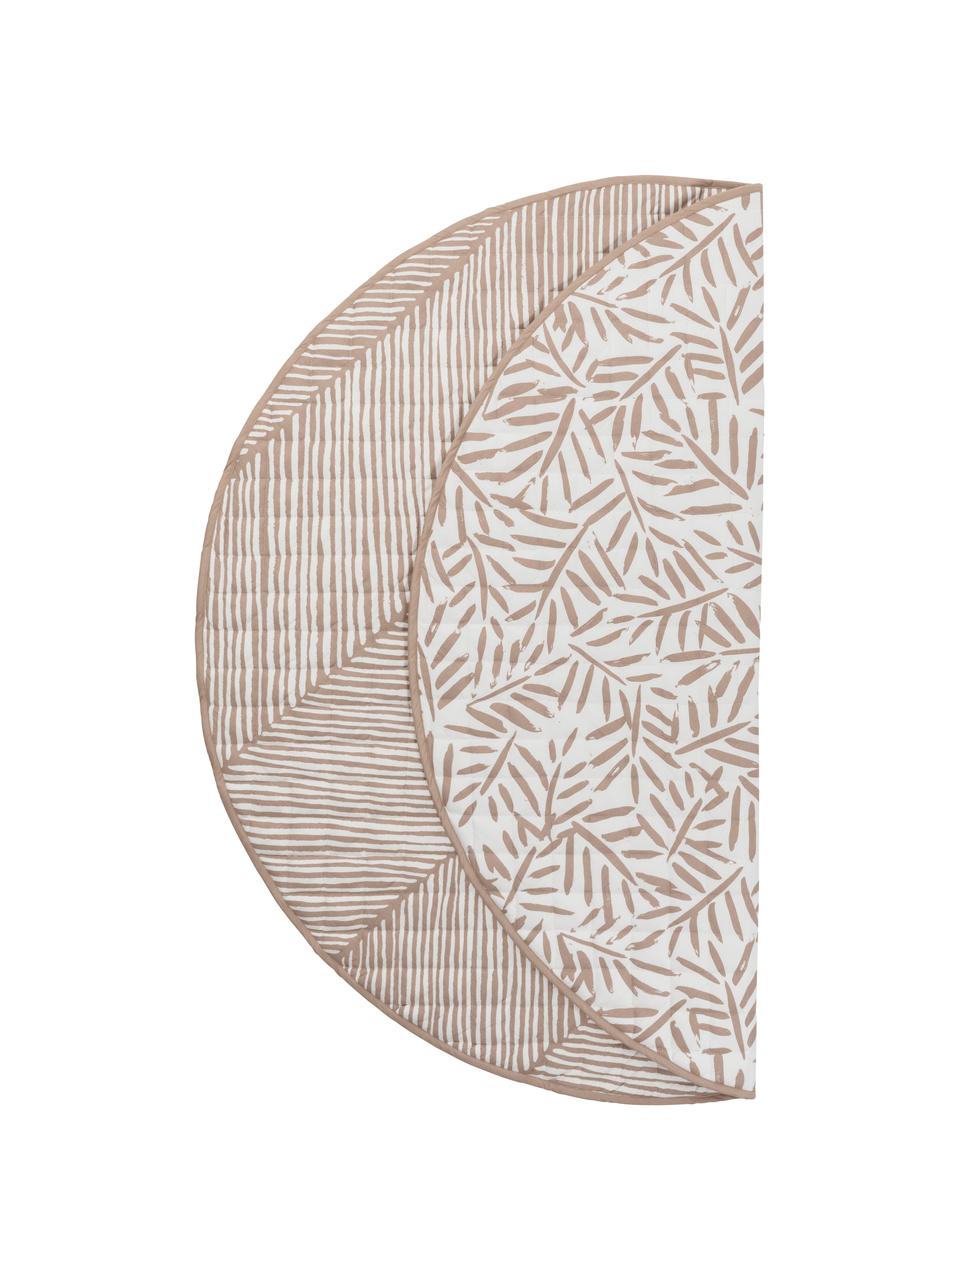 Wende-Spielmatte Seashell, Bezug: 100 % Baumwolle, Rosa, Weiss, Ø 133 cm